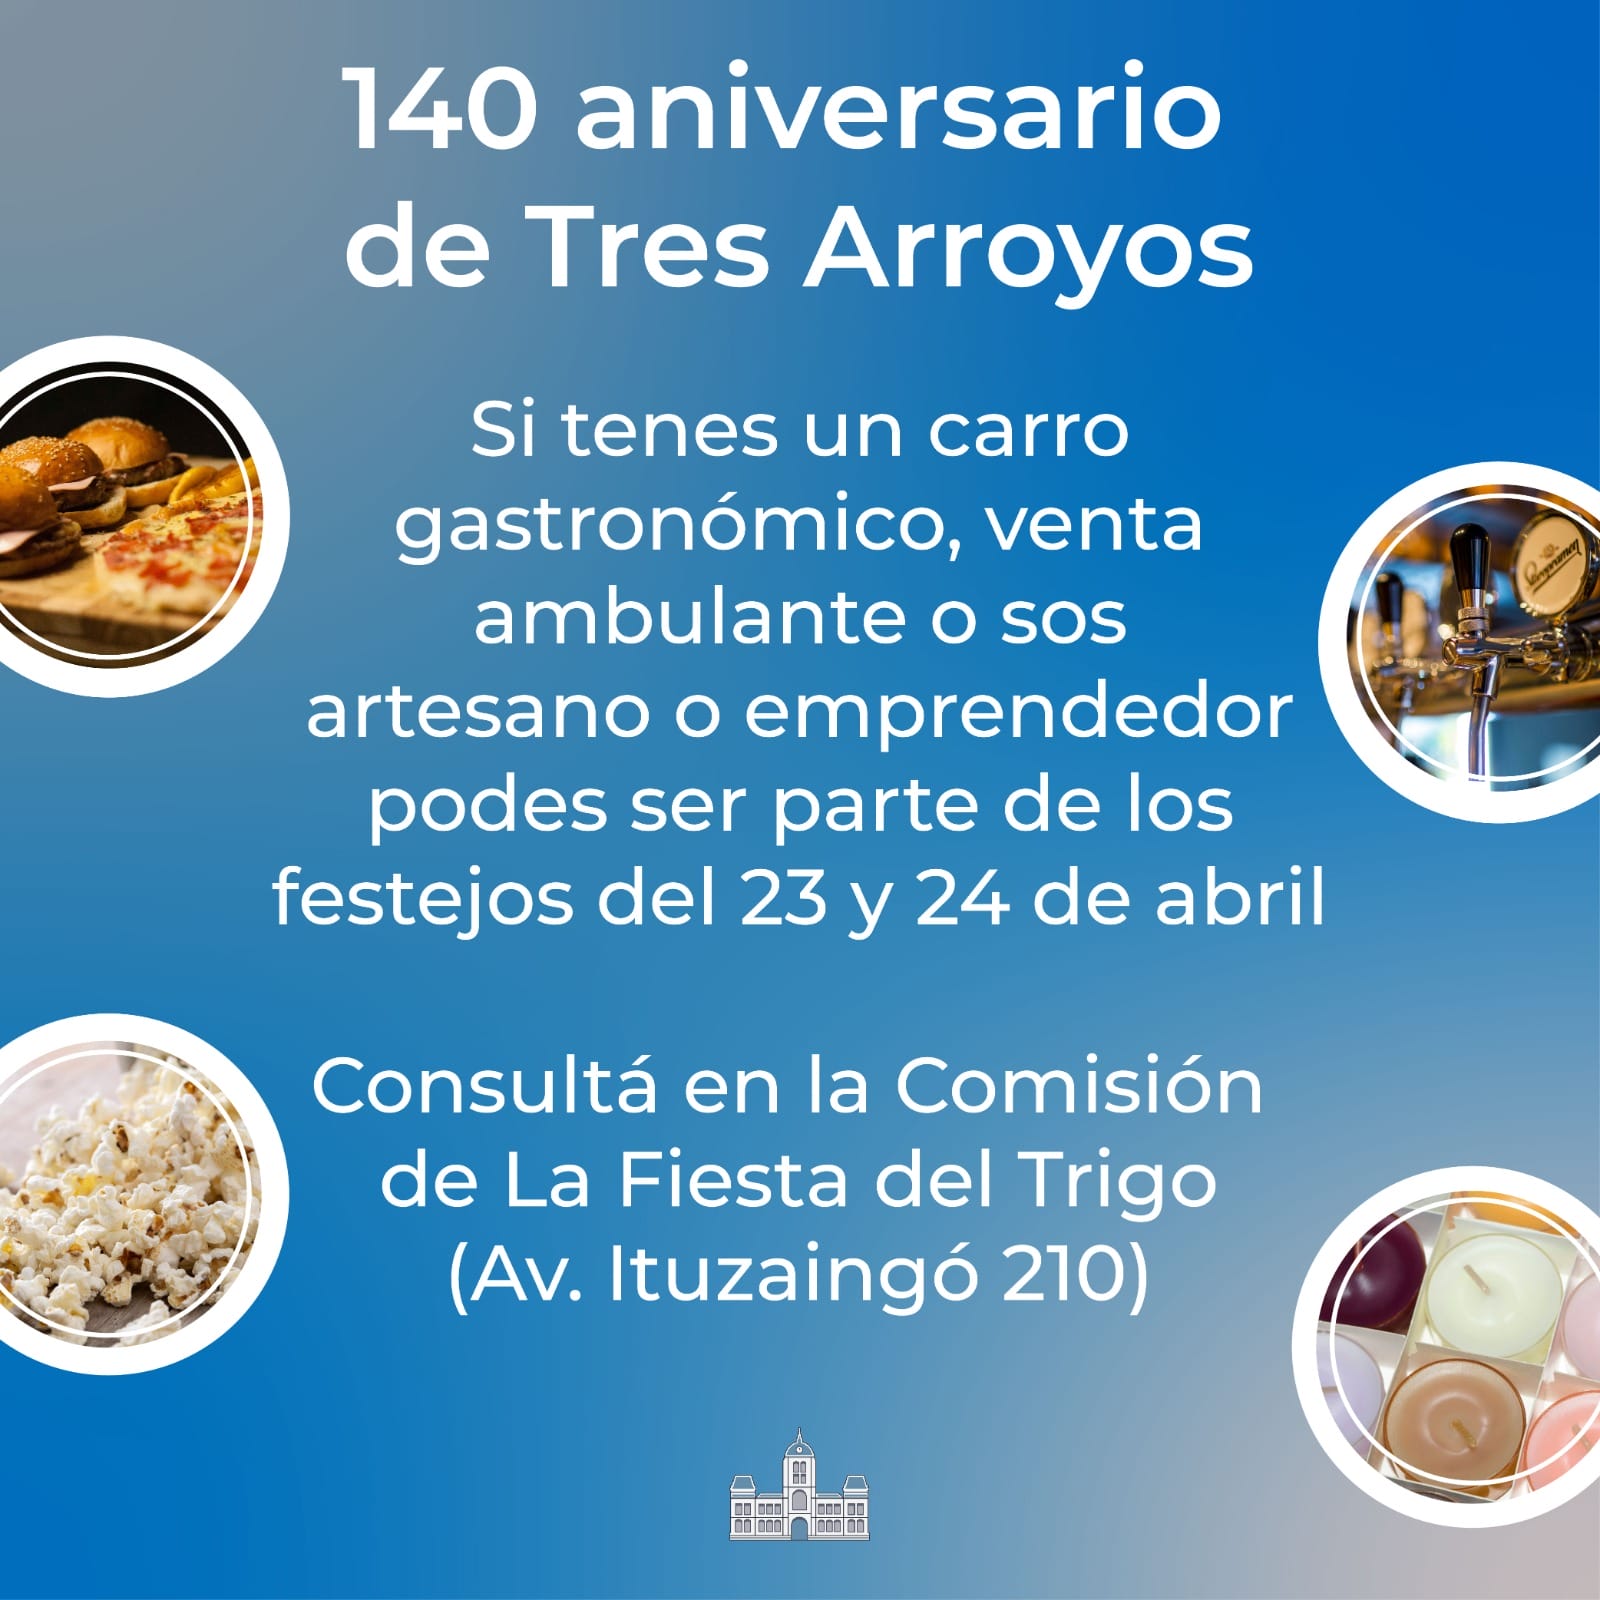 140º aniversario de Tres Arroyos: Convocatoria a emprendedores, artesanos y comerciantes